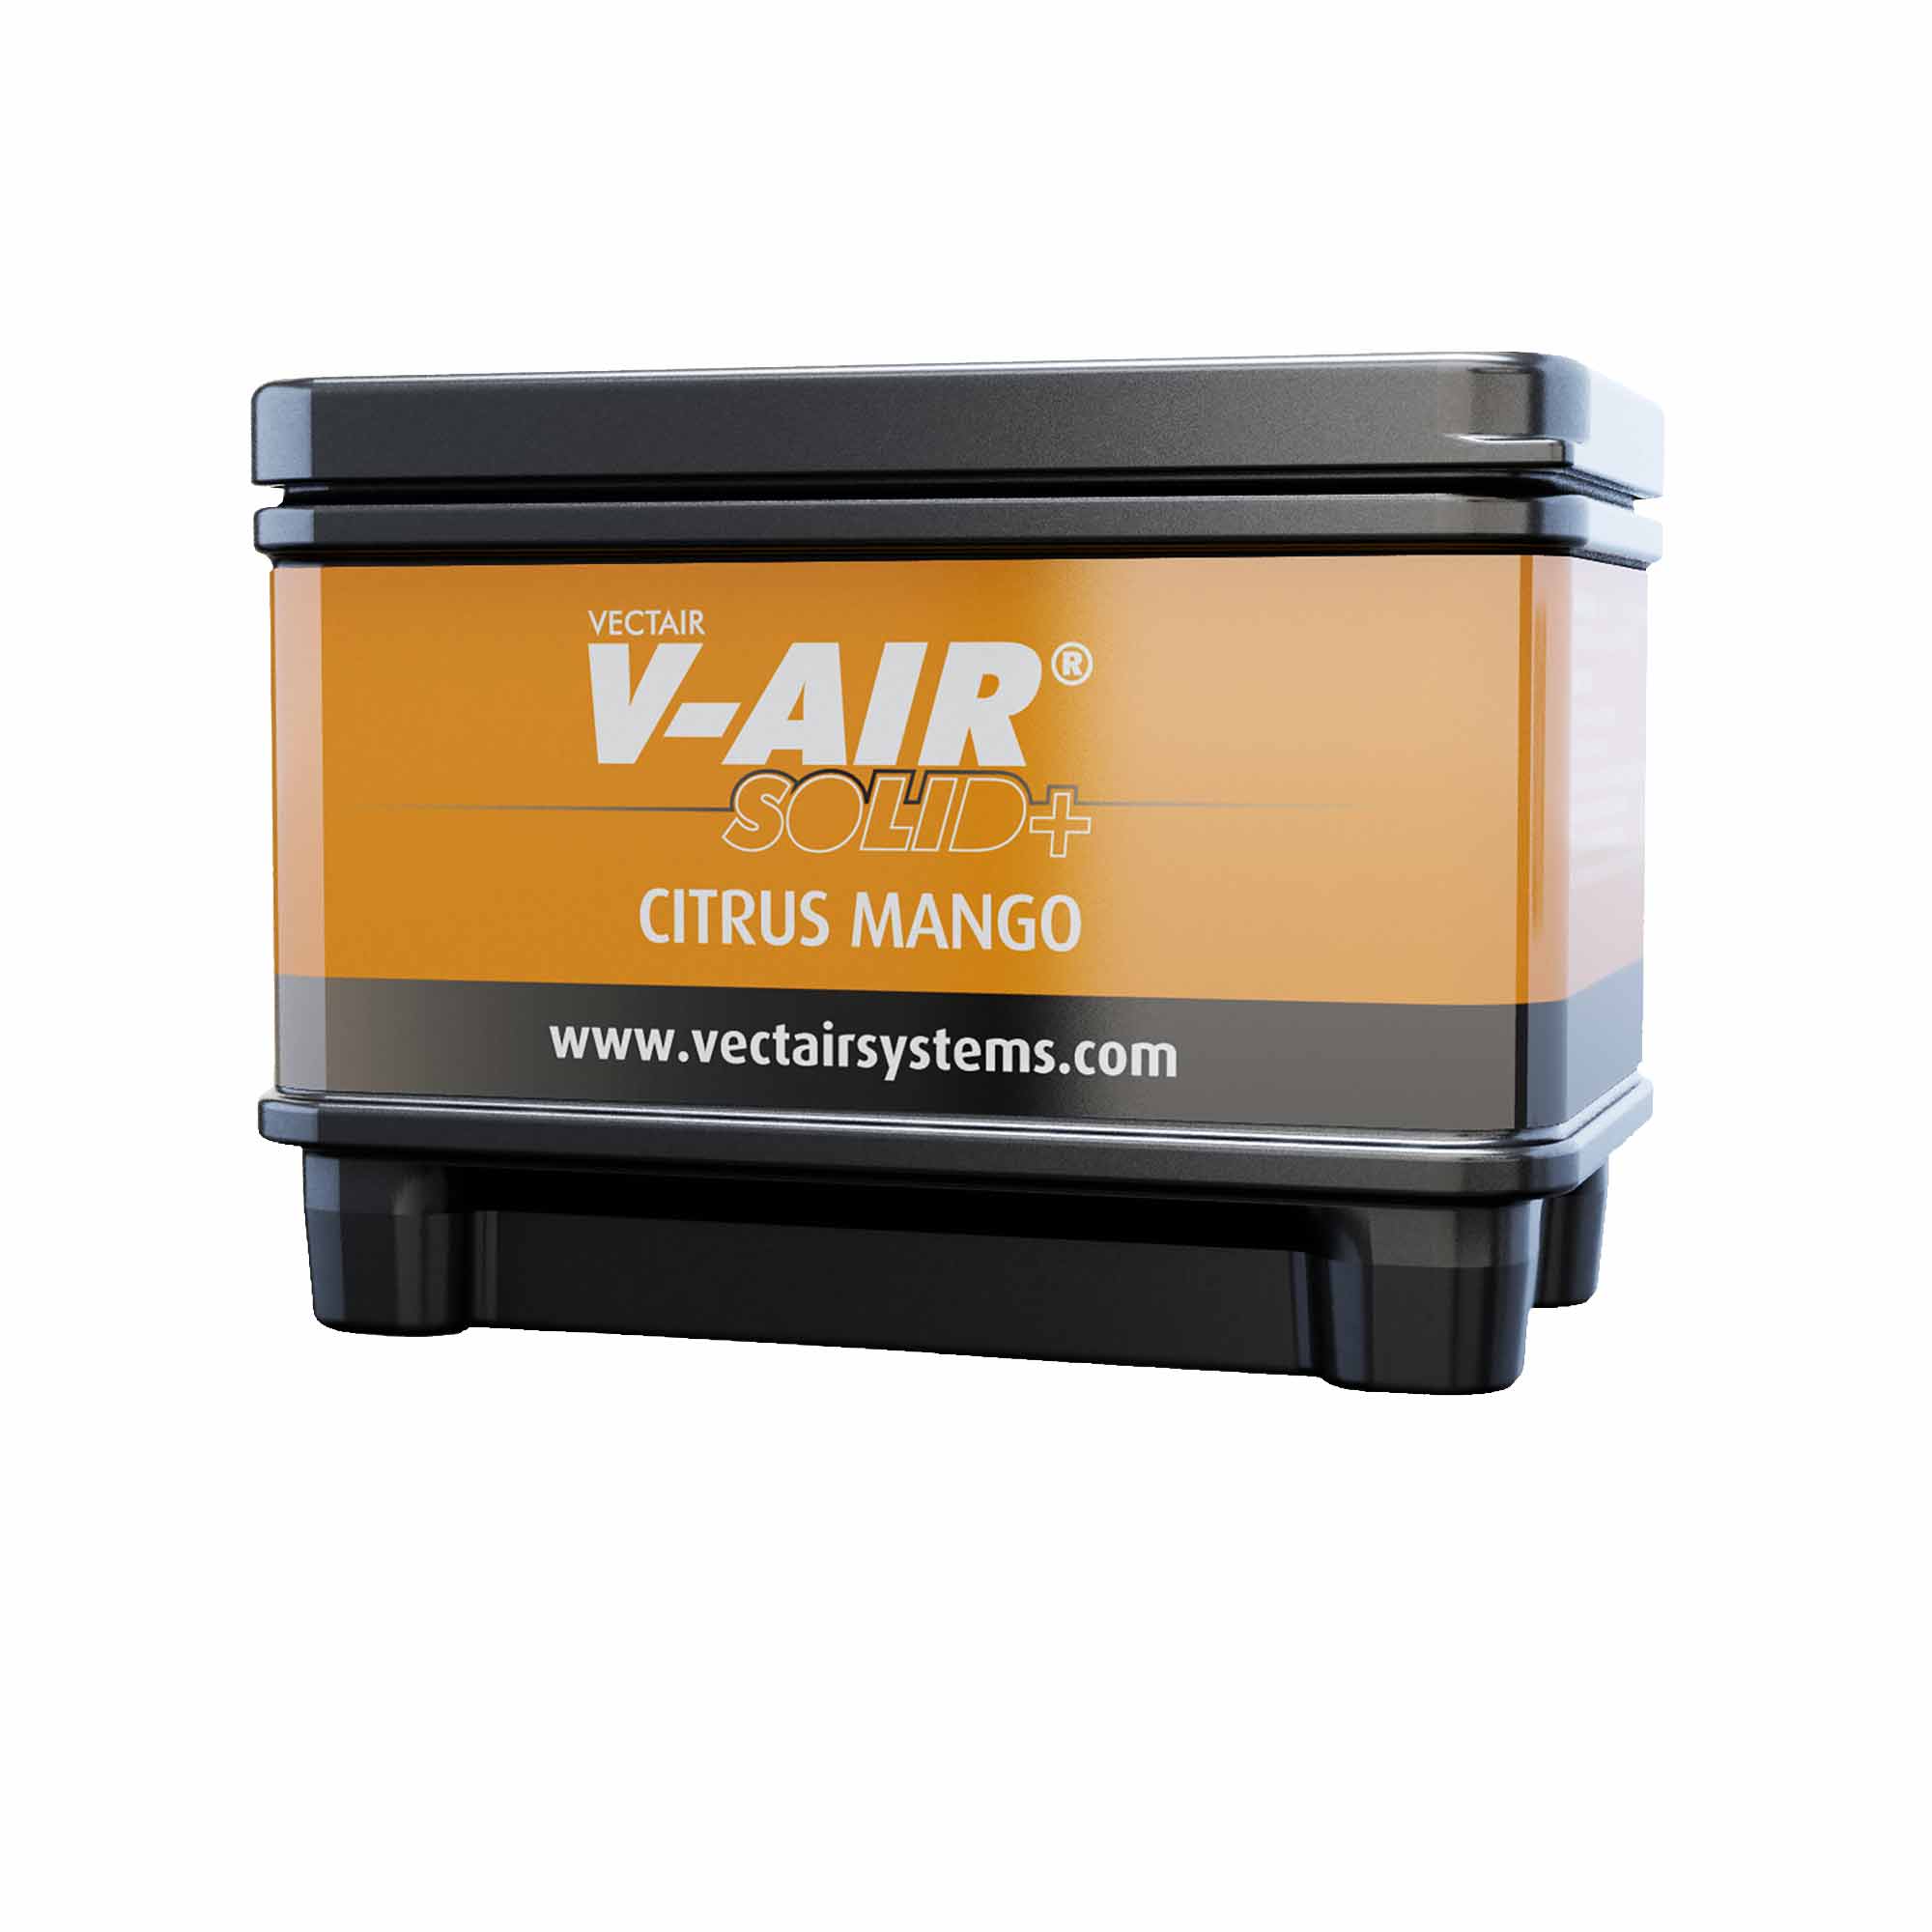 V-Air SOLID Plus Citrus Mango